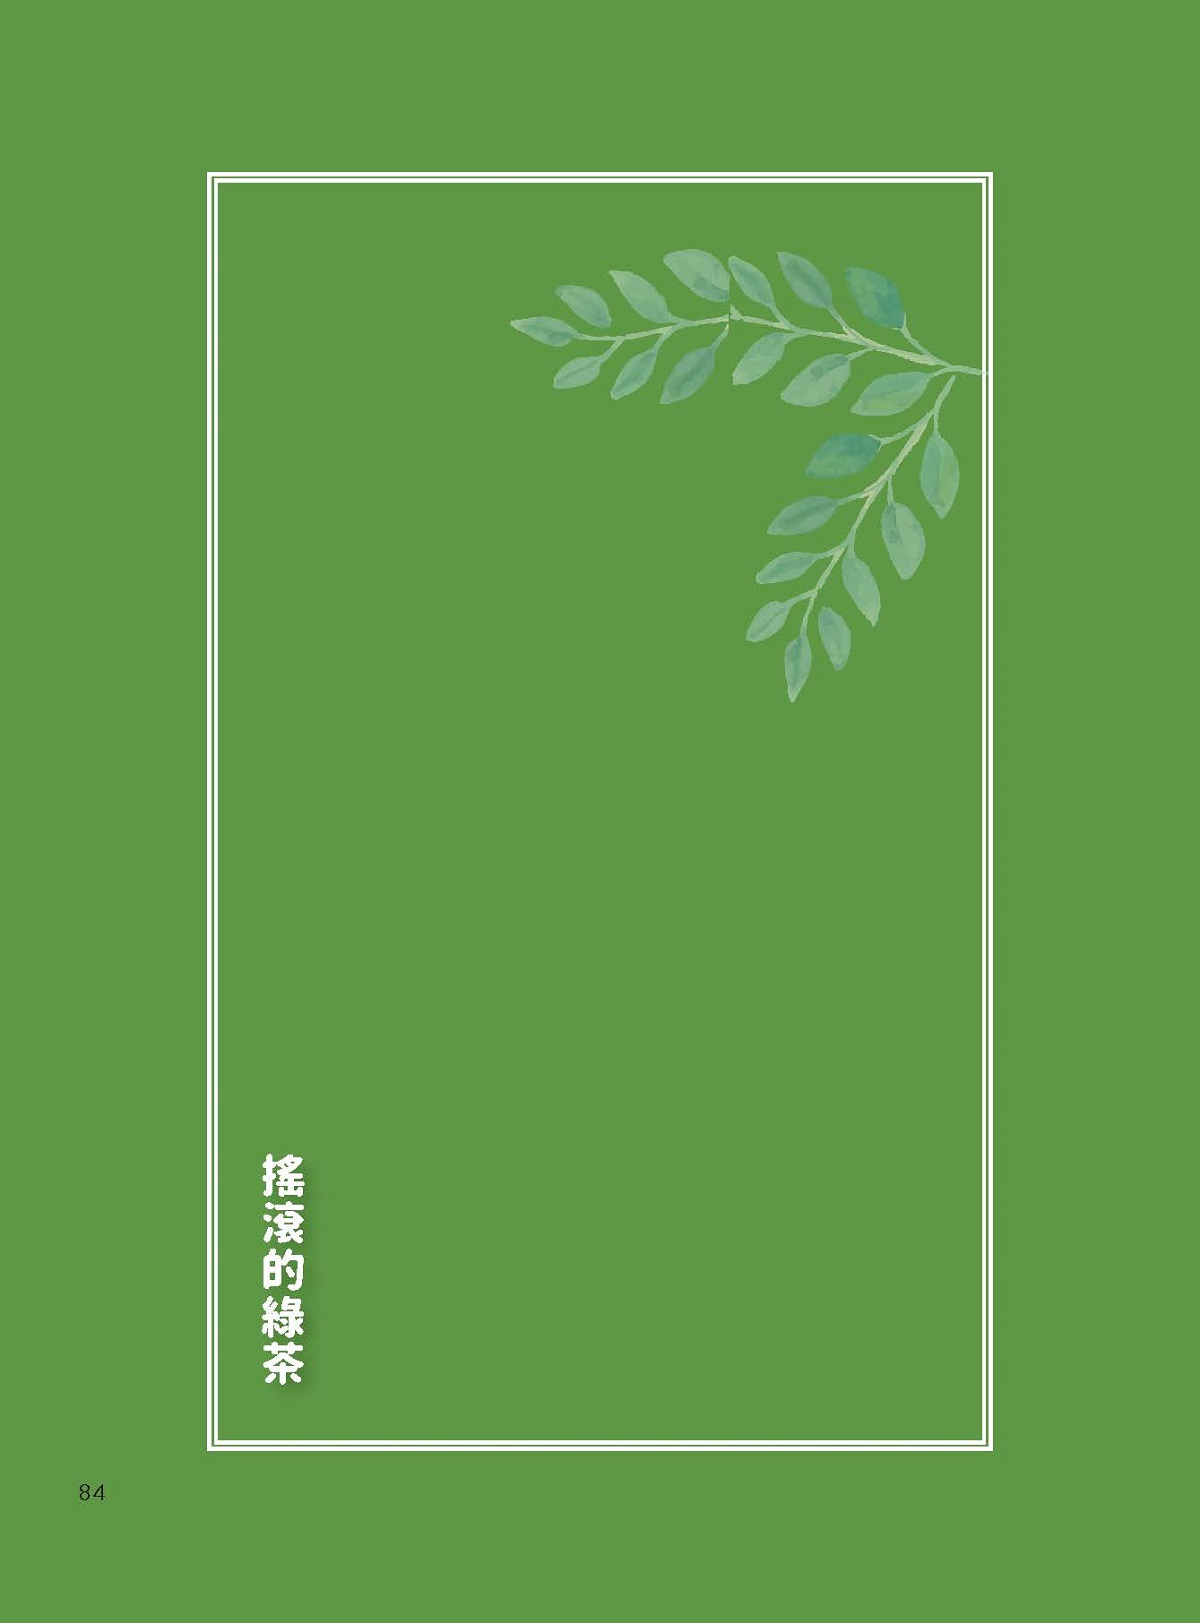 「五彩繽紛任體驗」—搖滾的綠茶—星源茶園（Xing Yuan Tea Farm）-1